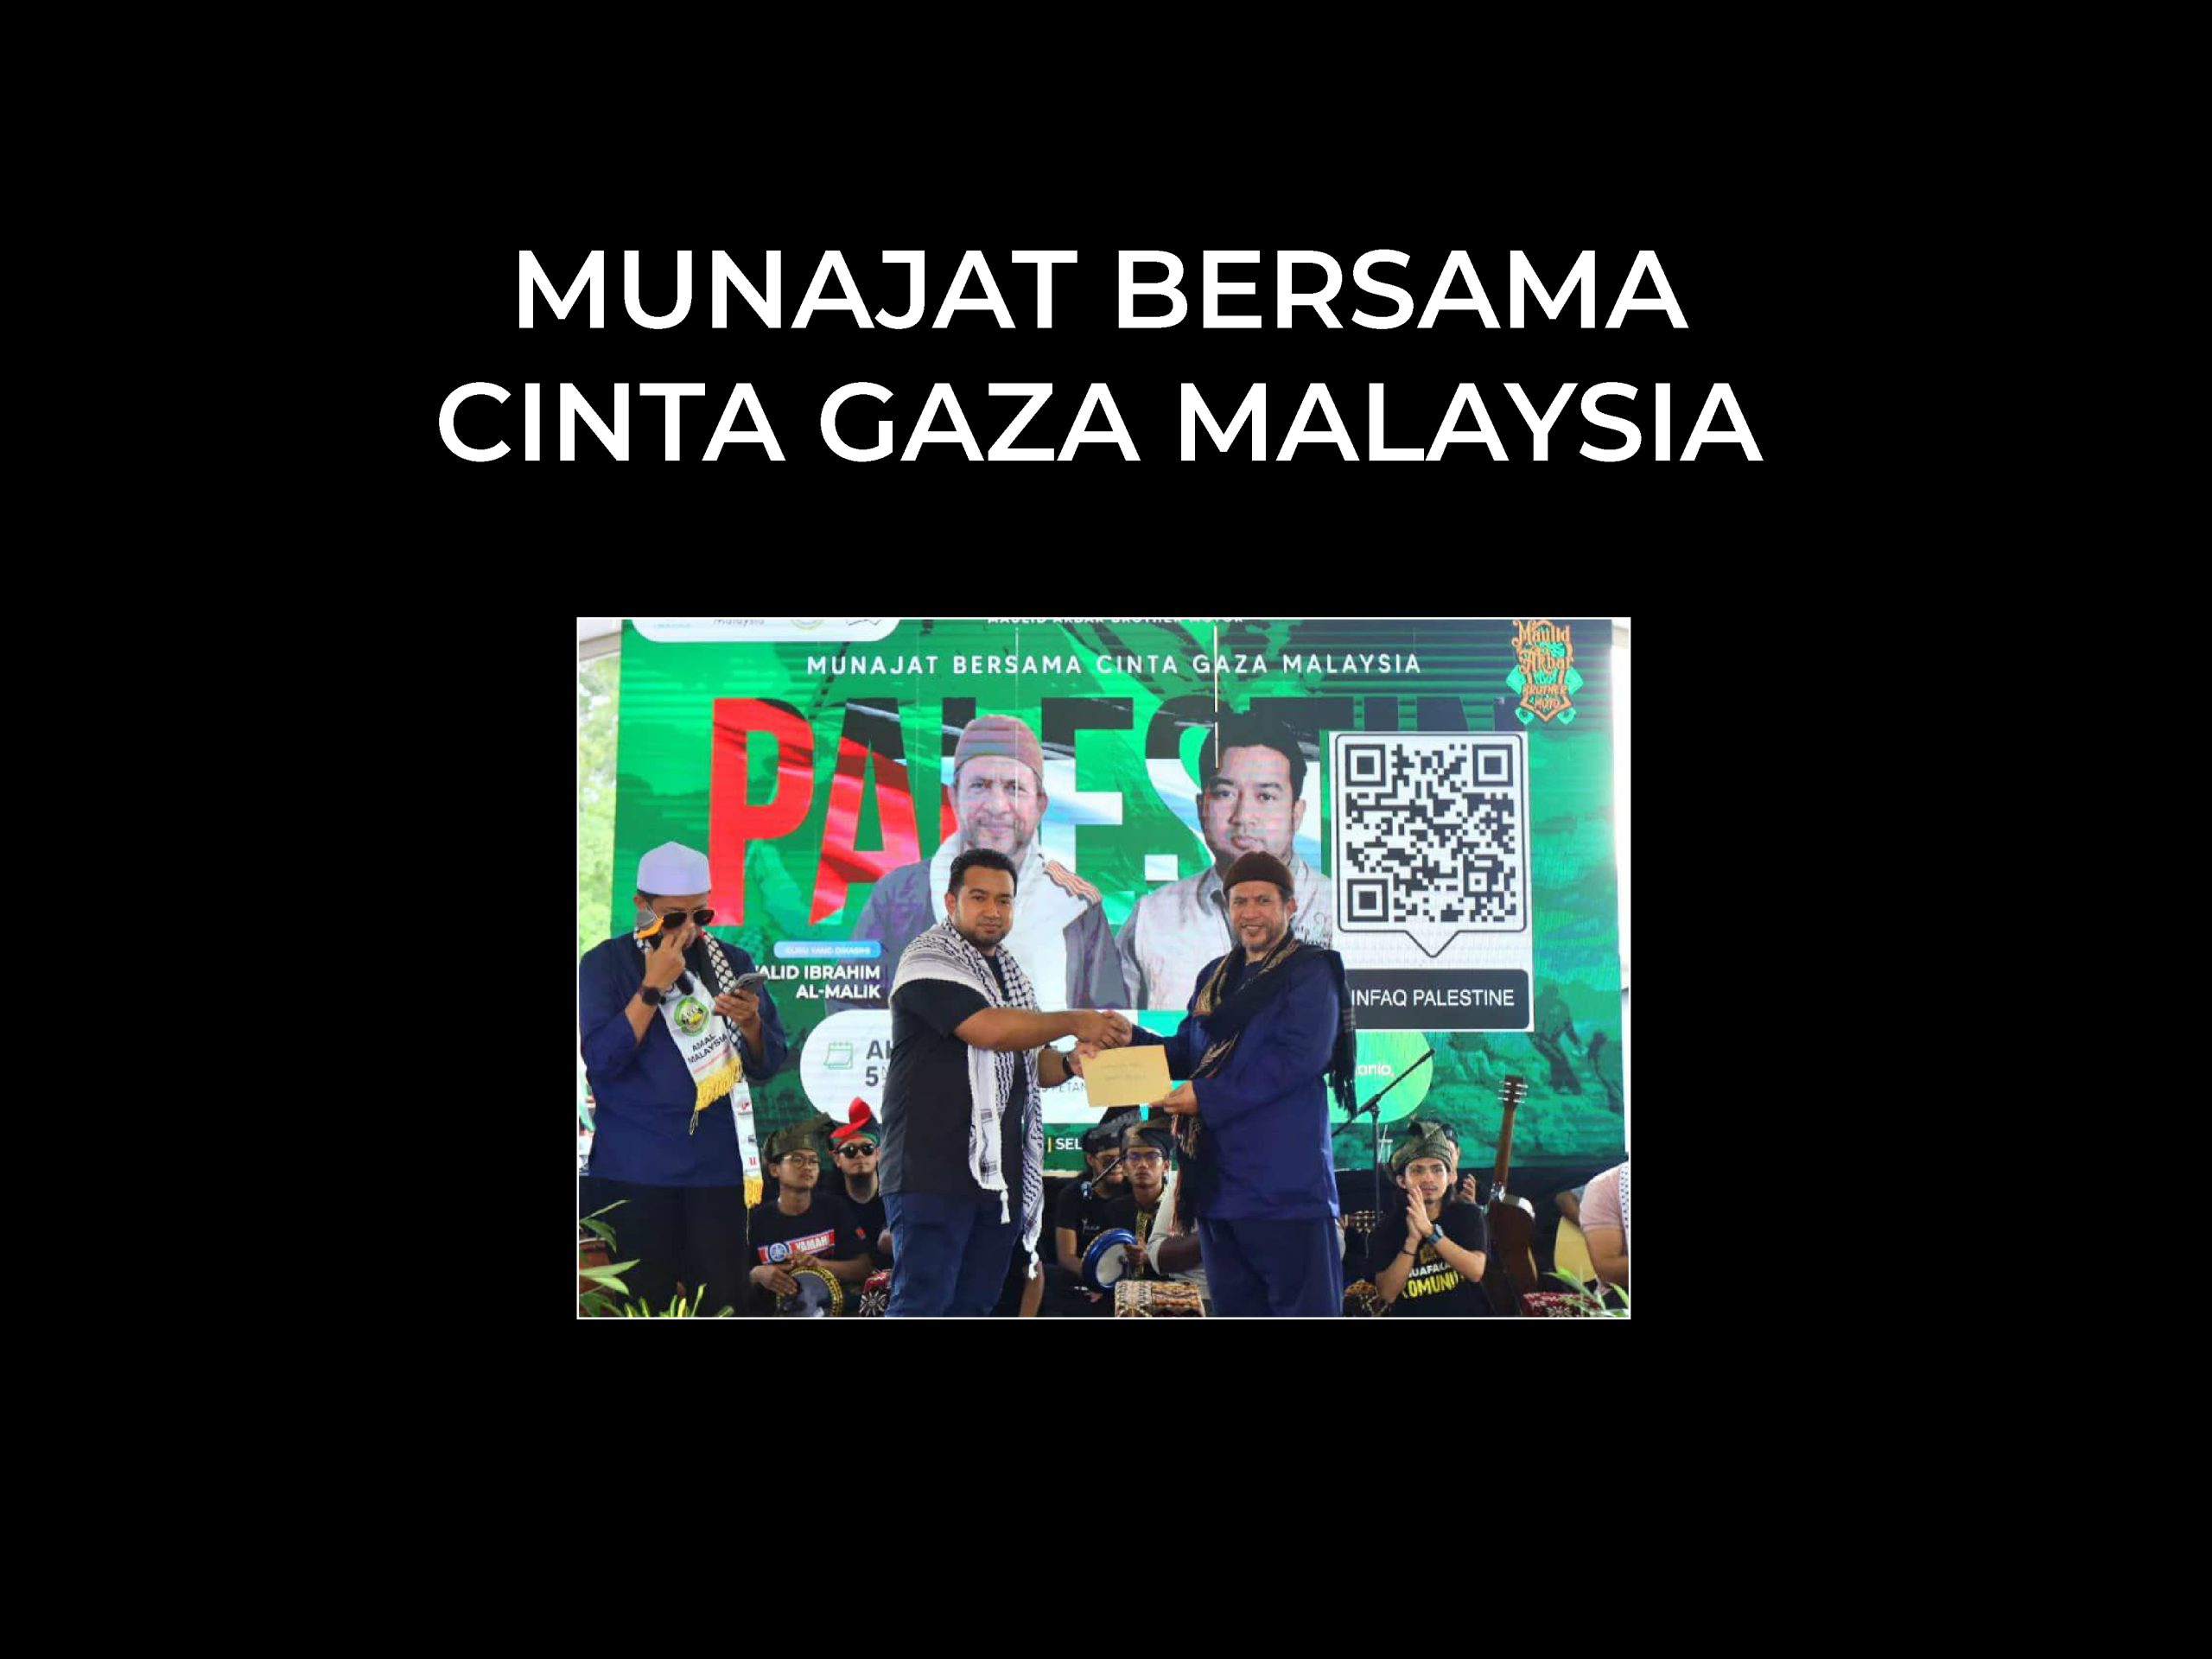 Munajat Bersama Cinta Gaza Malaysia